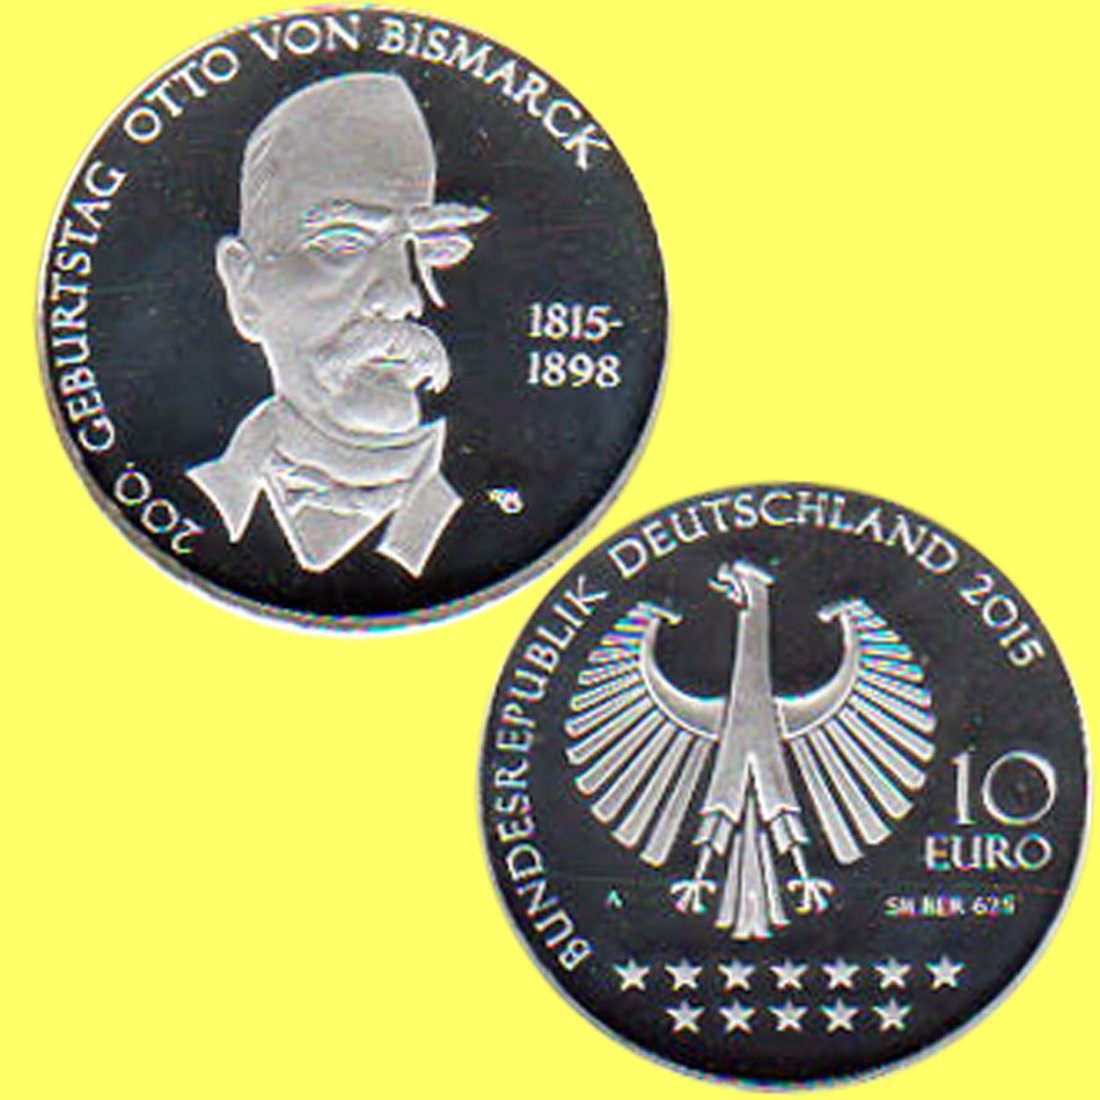  Offiz. 10 Euro-Silbermünze BRD *200. Geburtstag von Otto von Bismarck* 2015 *PP*   